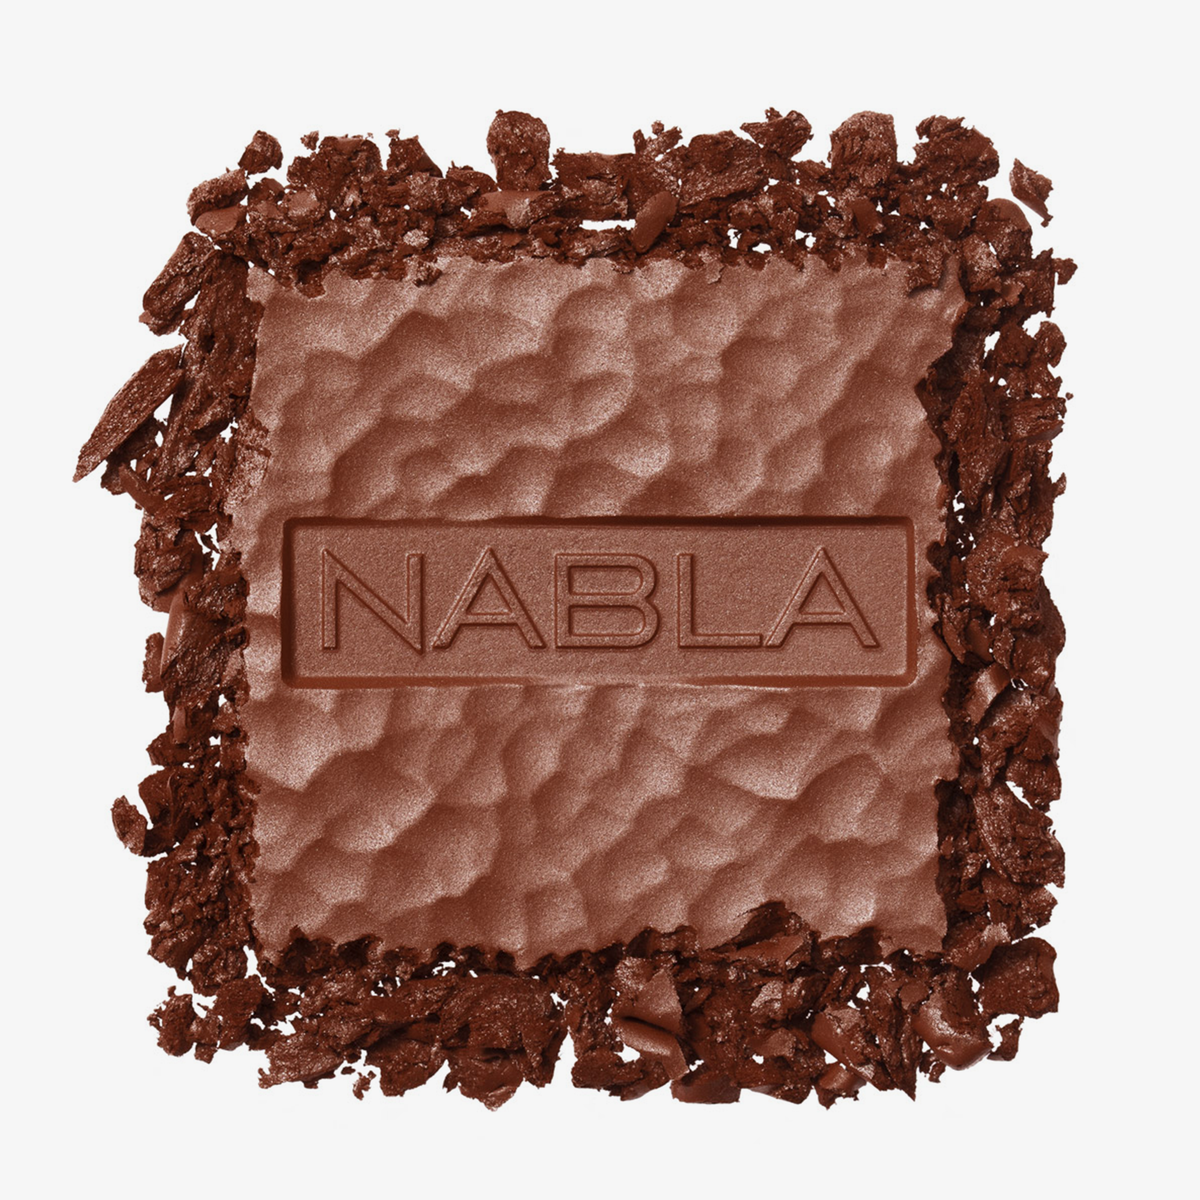 Puder des NABLA Cosmetics Skin Bronzing in der Farbe Profile. Weißer Hintergrund.